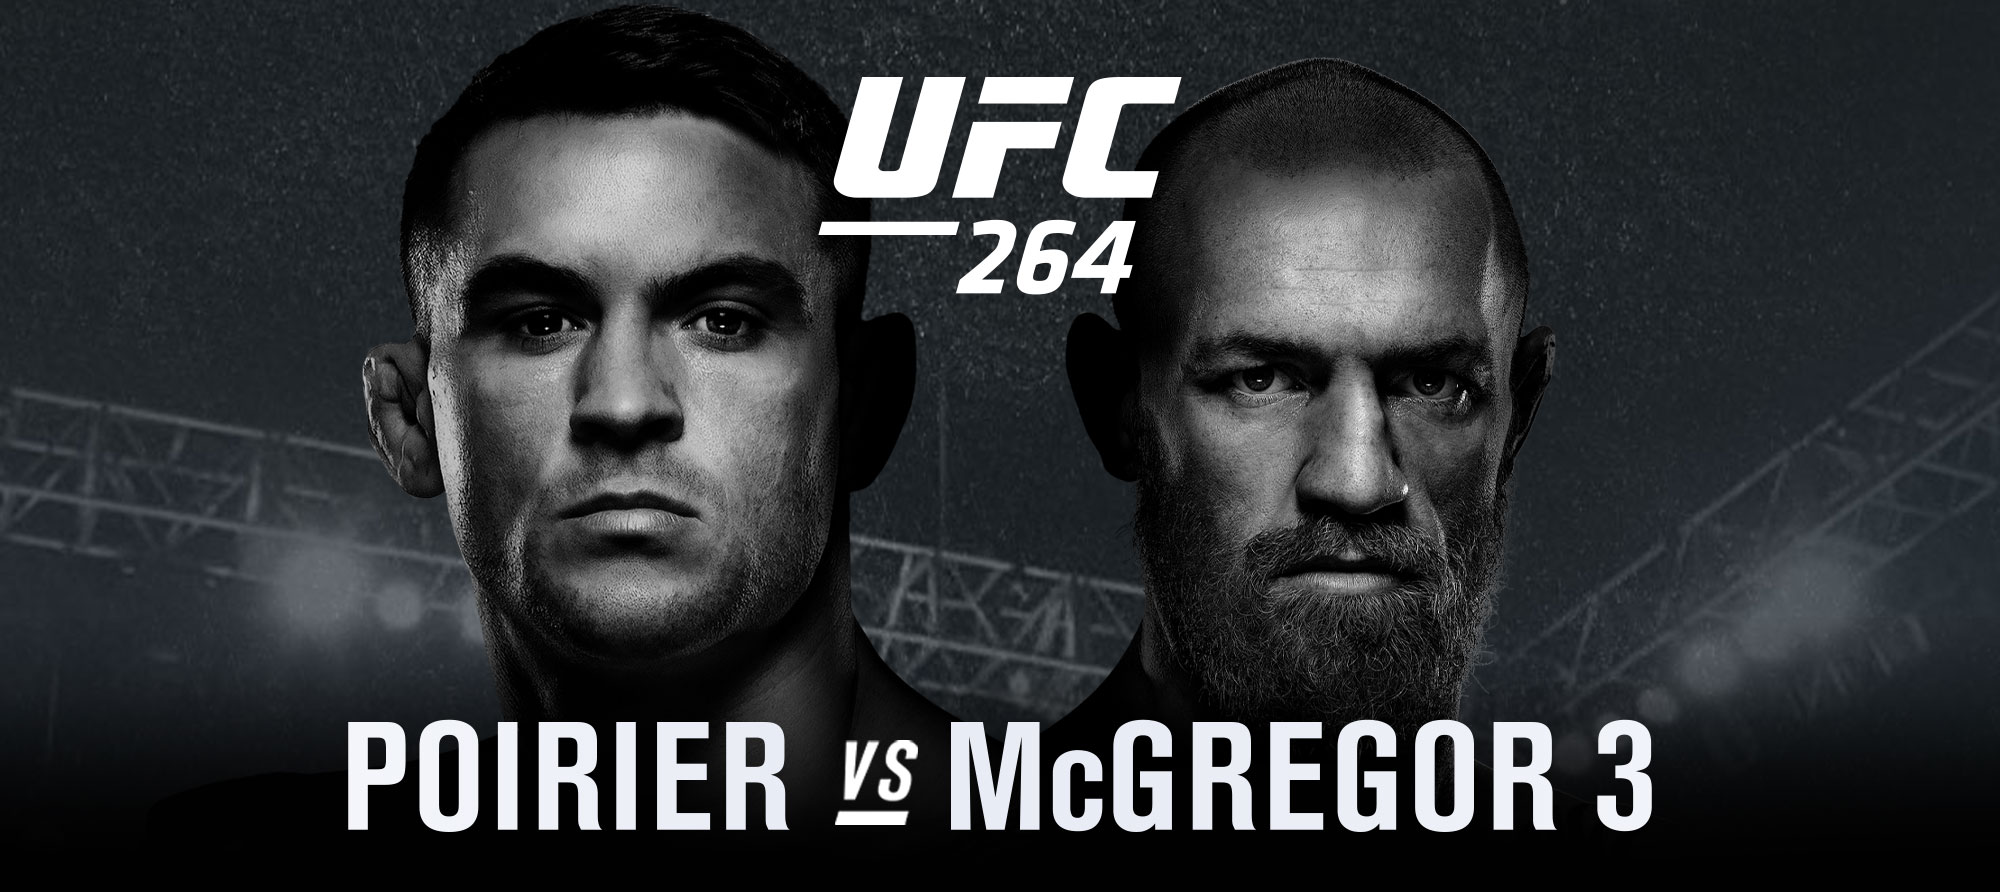 Background image for UFC 264 Poirier vs McGregor 3